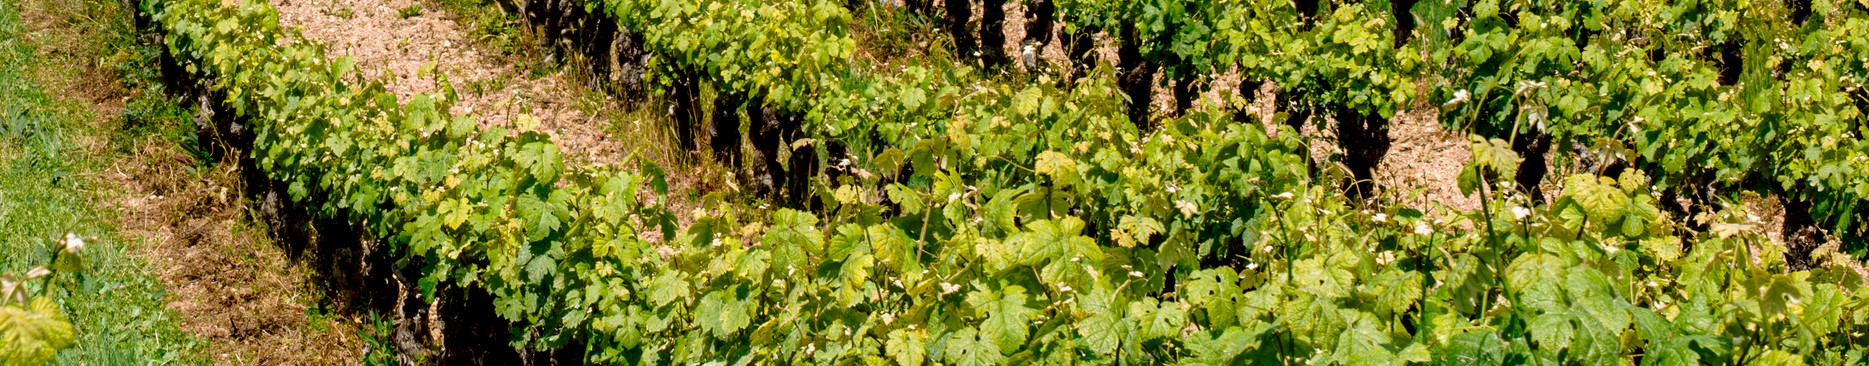 Les comté tolosan - vins de gaillac - Maison Labastide 